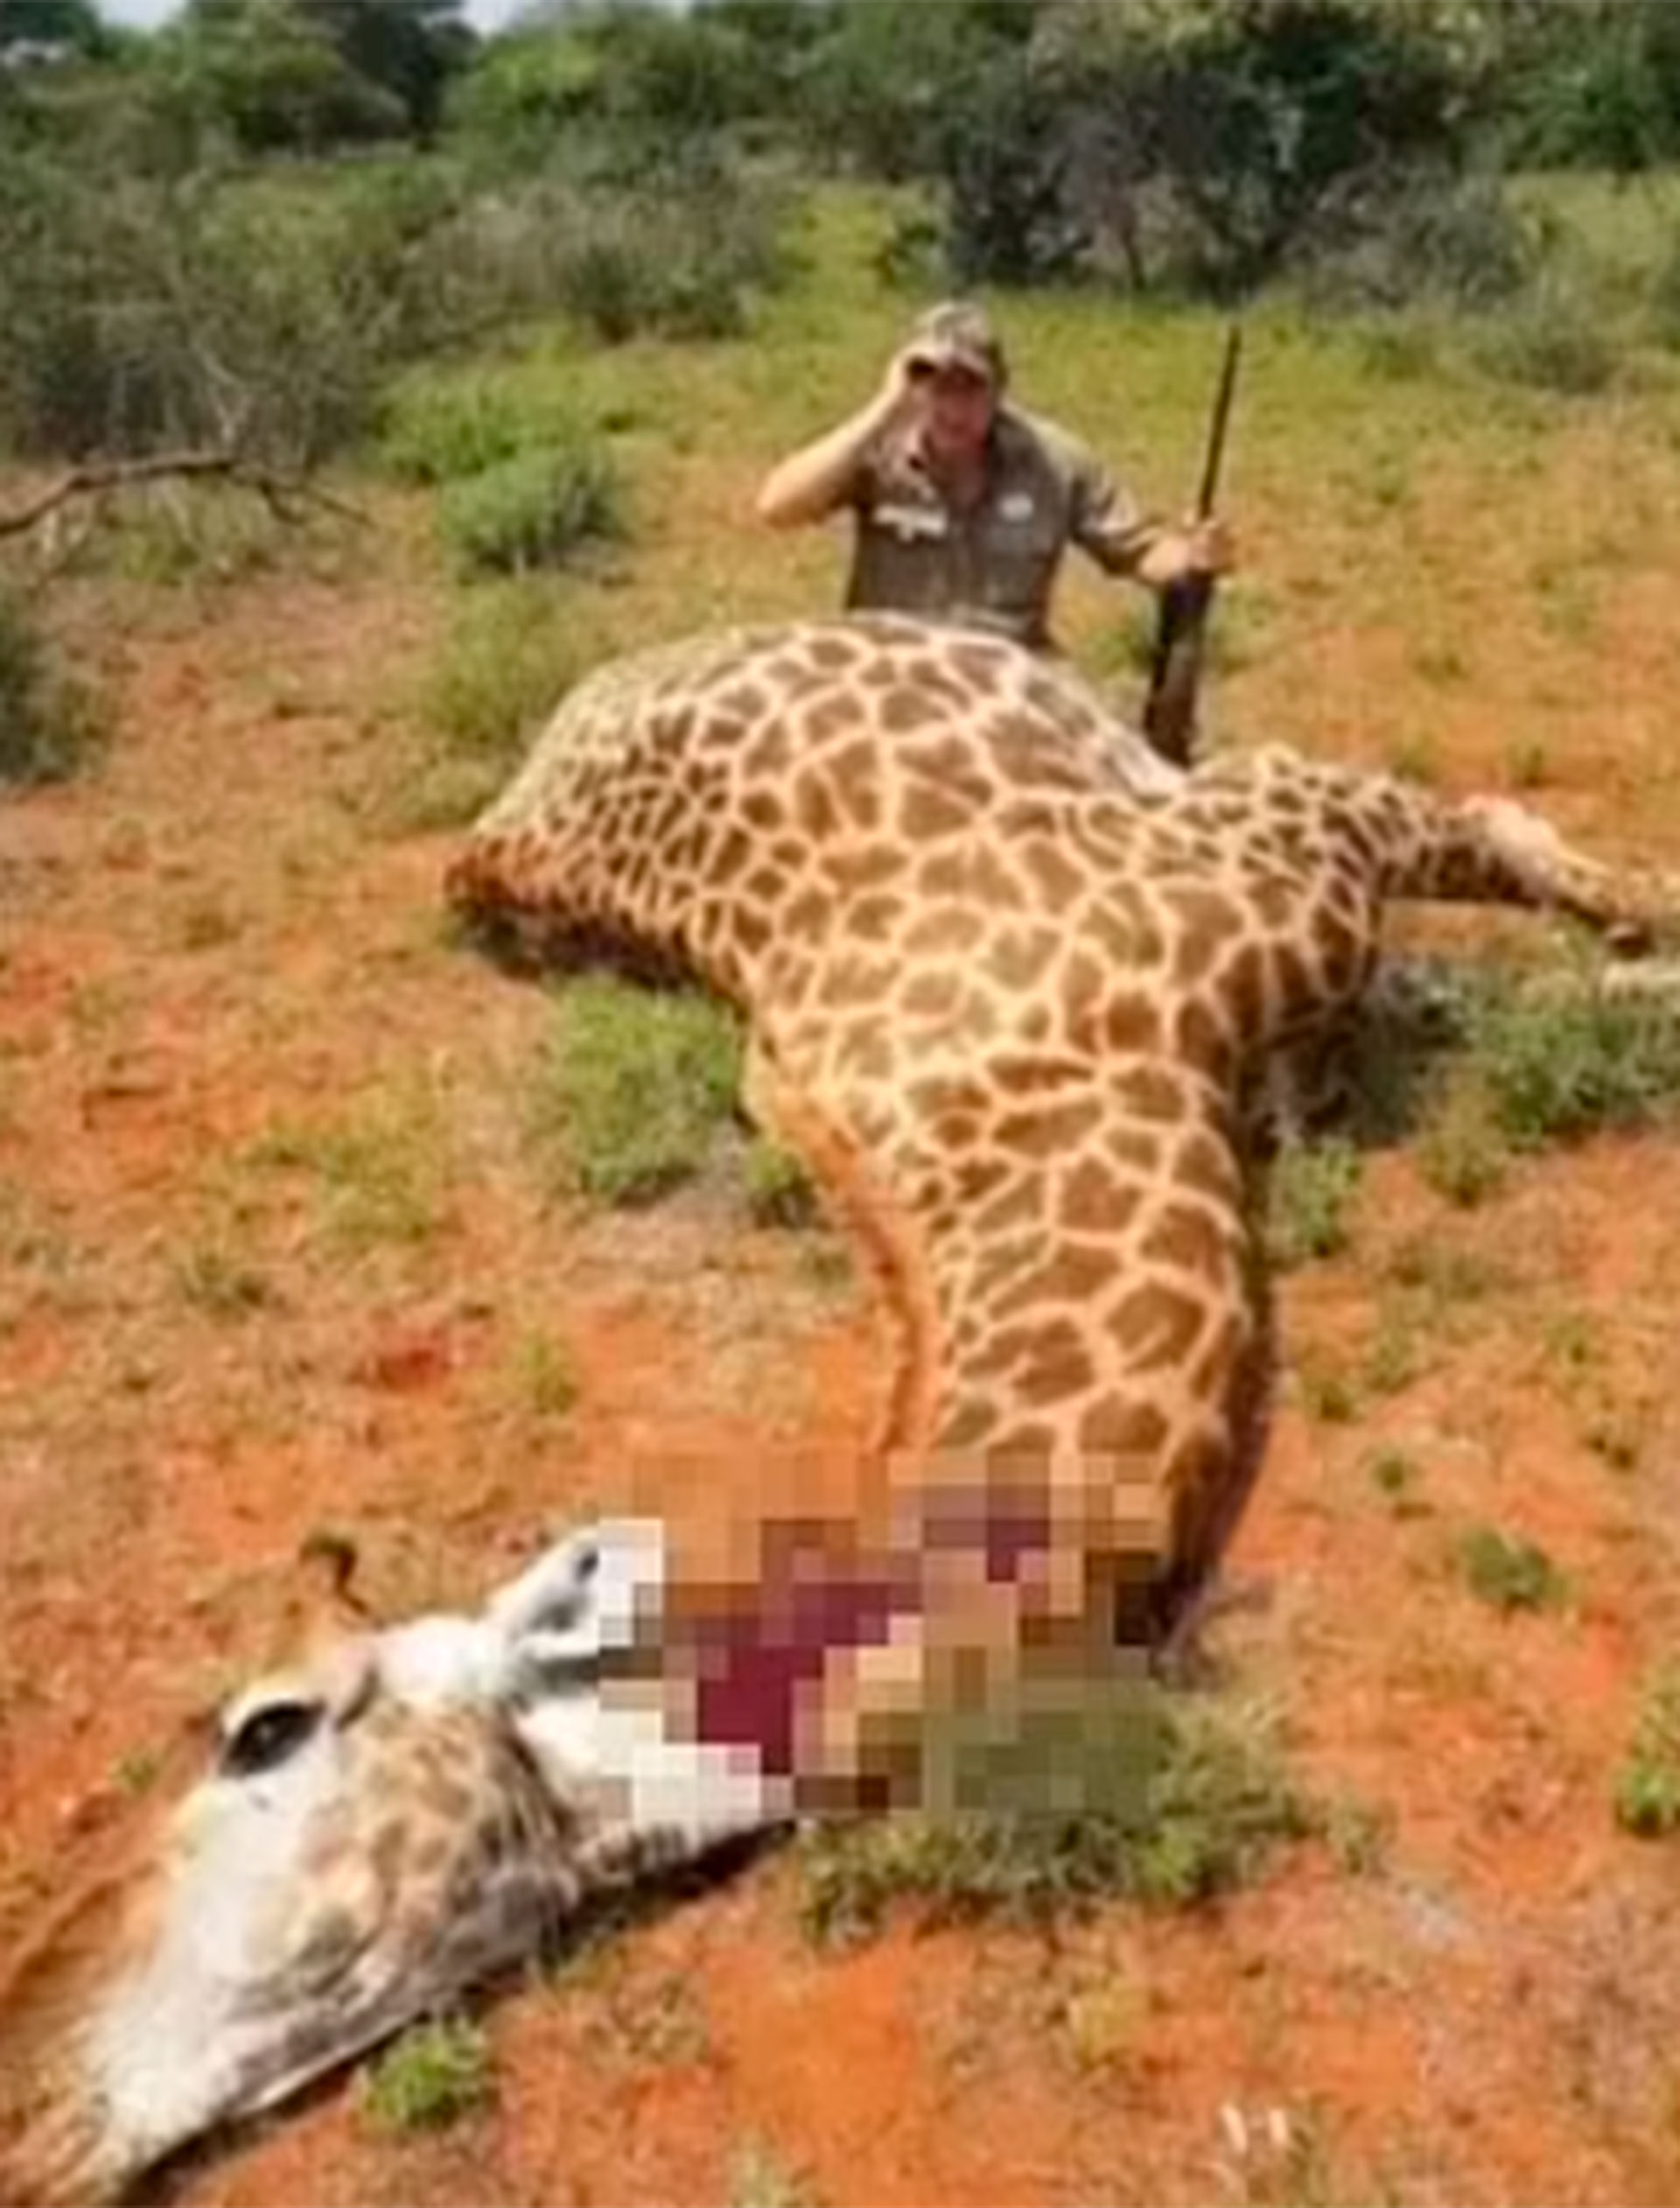 La organización sin fines de lucro Protect All Wildlife afirmó que Naude estaba involucrado en la cría y venta de jirafas a clientes únicamente con fines de caza (dailymail)